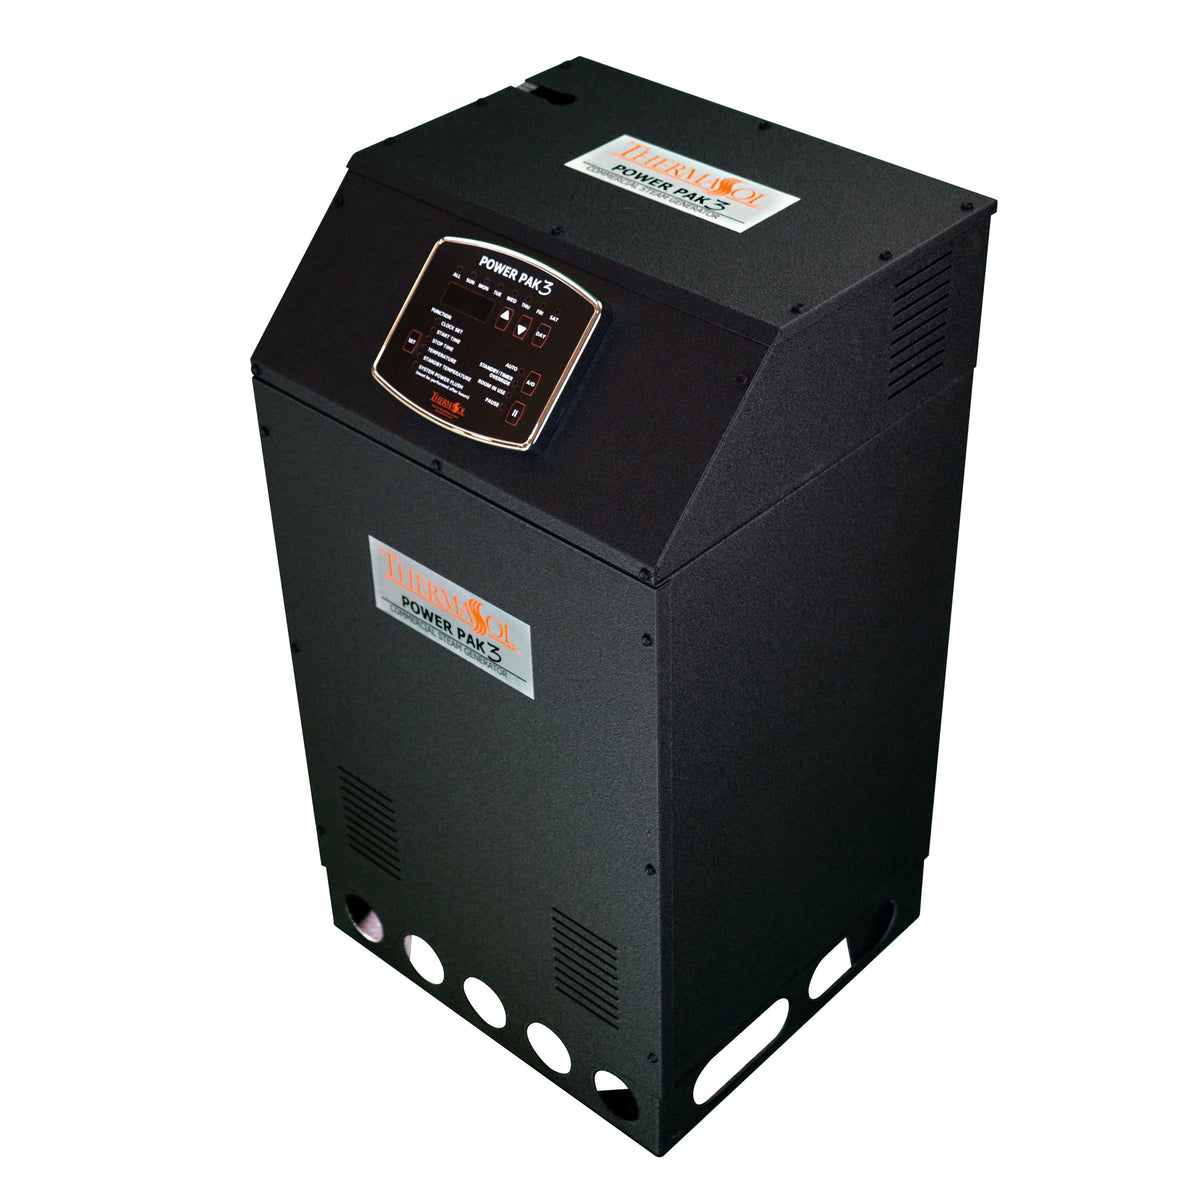 ThermaSol PowerPak Series III Commercial Steam Generator - 24LR-240